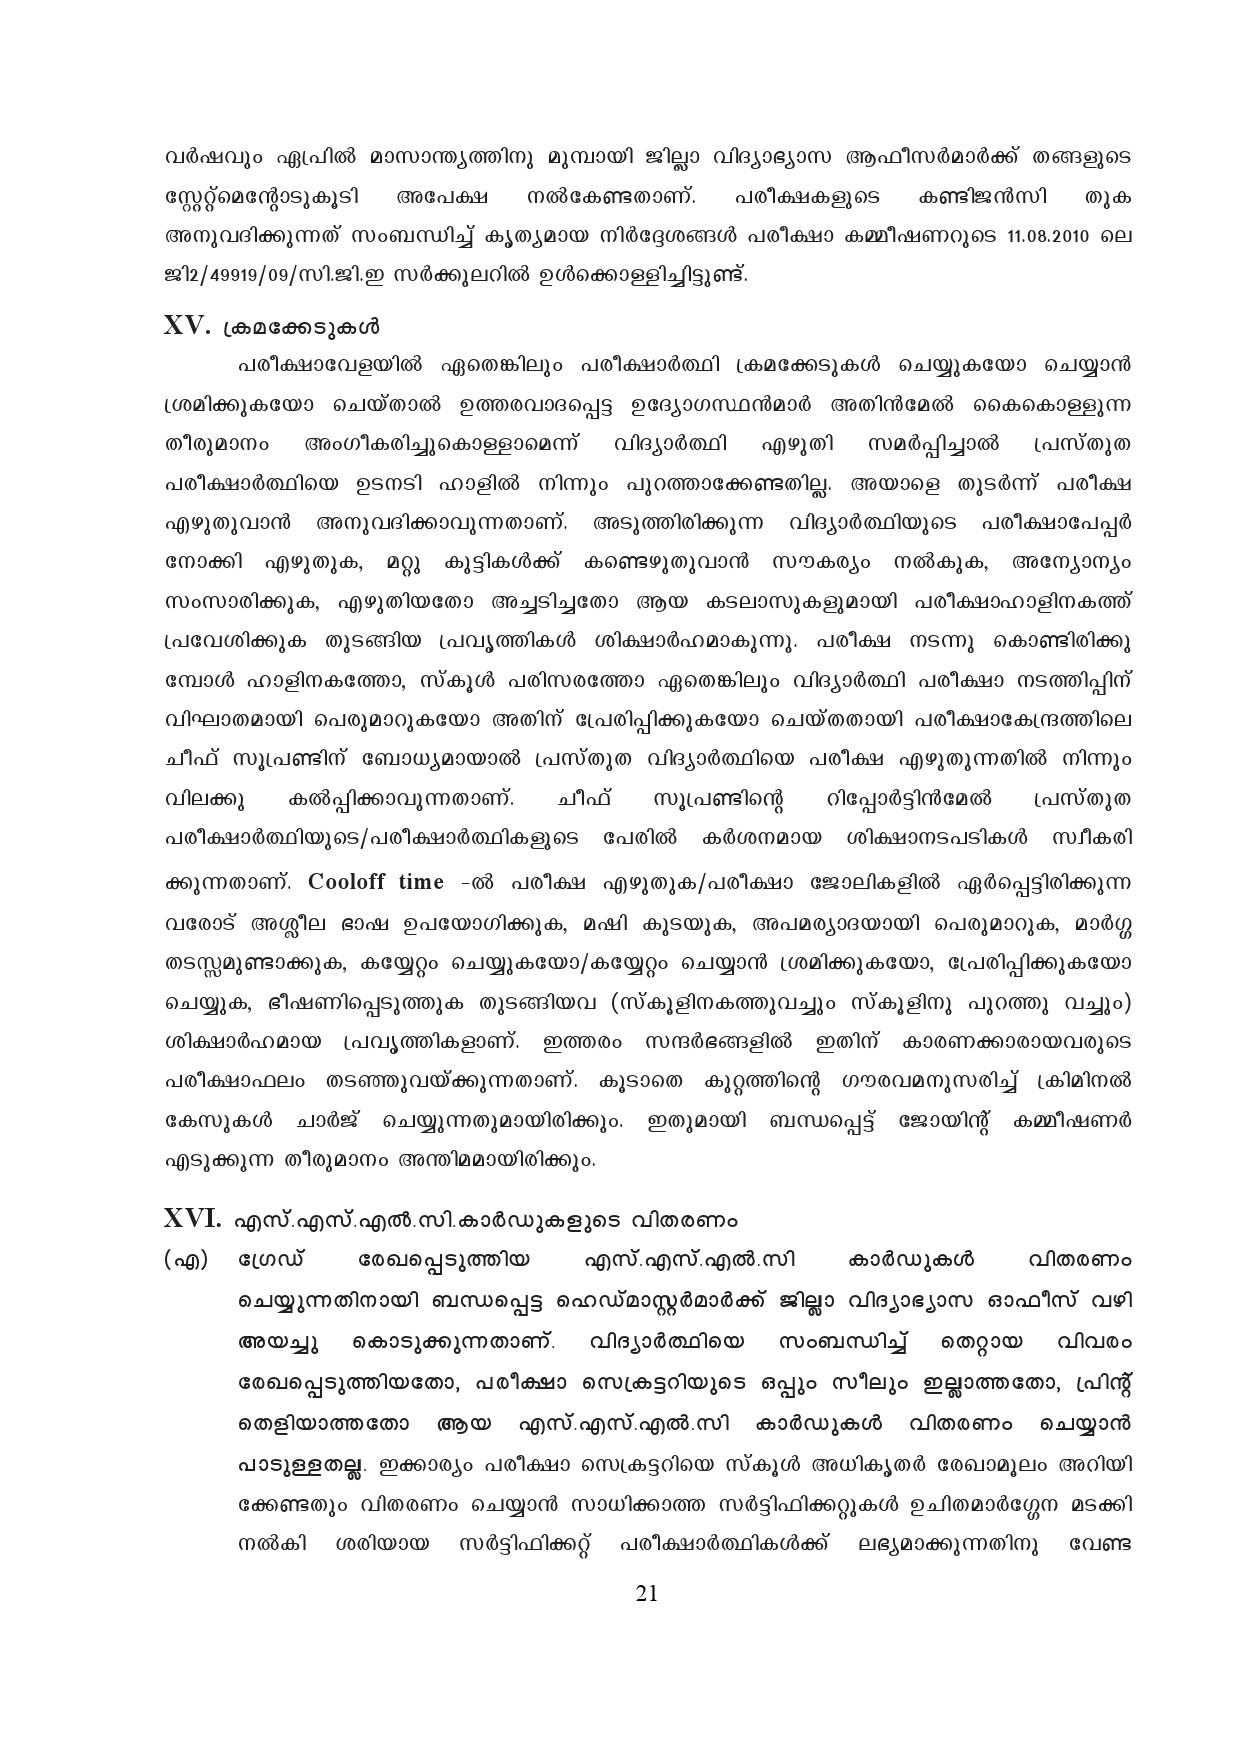 Kerala SSLC Exam Result 2019 - Notification Image 21